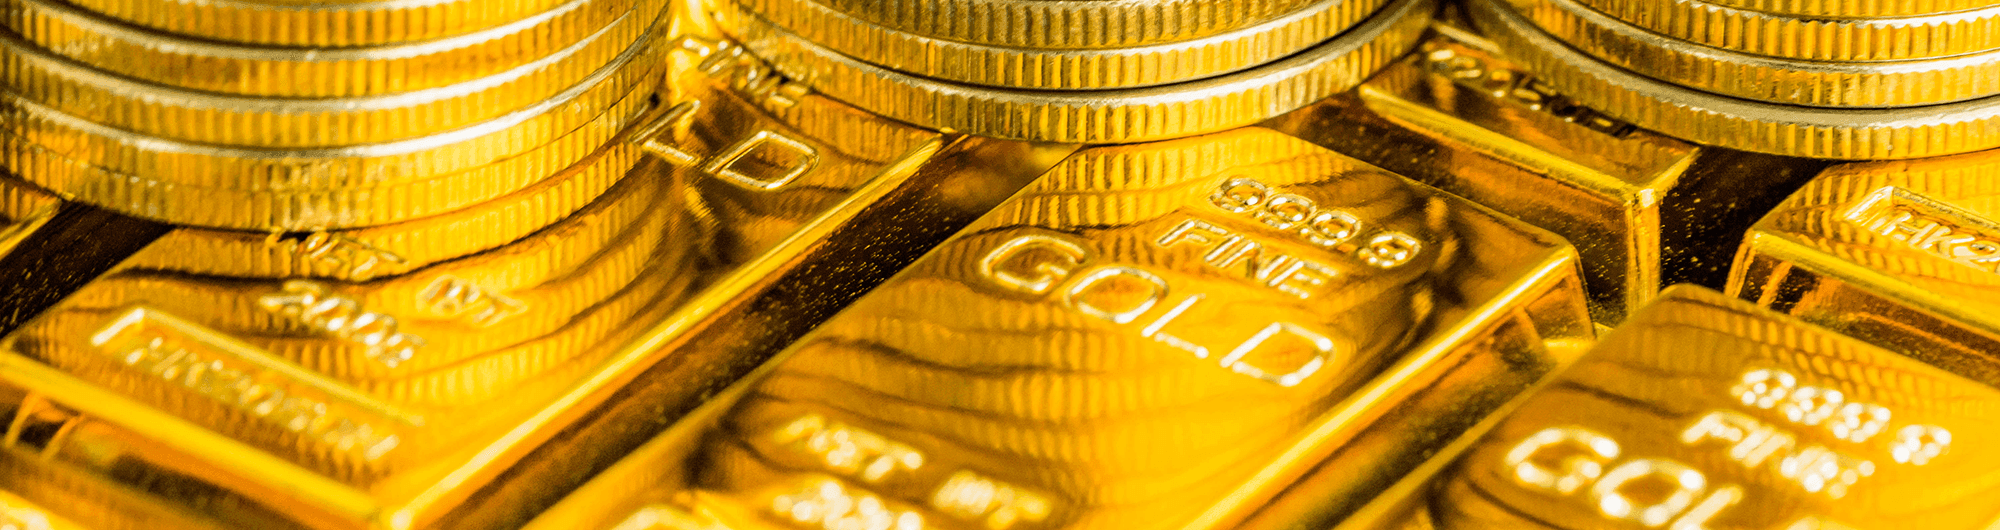 moedas e barras de ouro empilhadas 